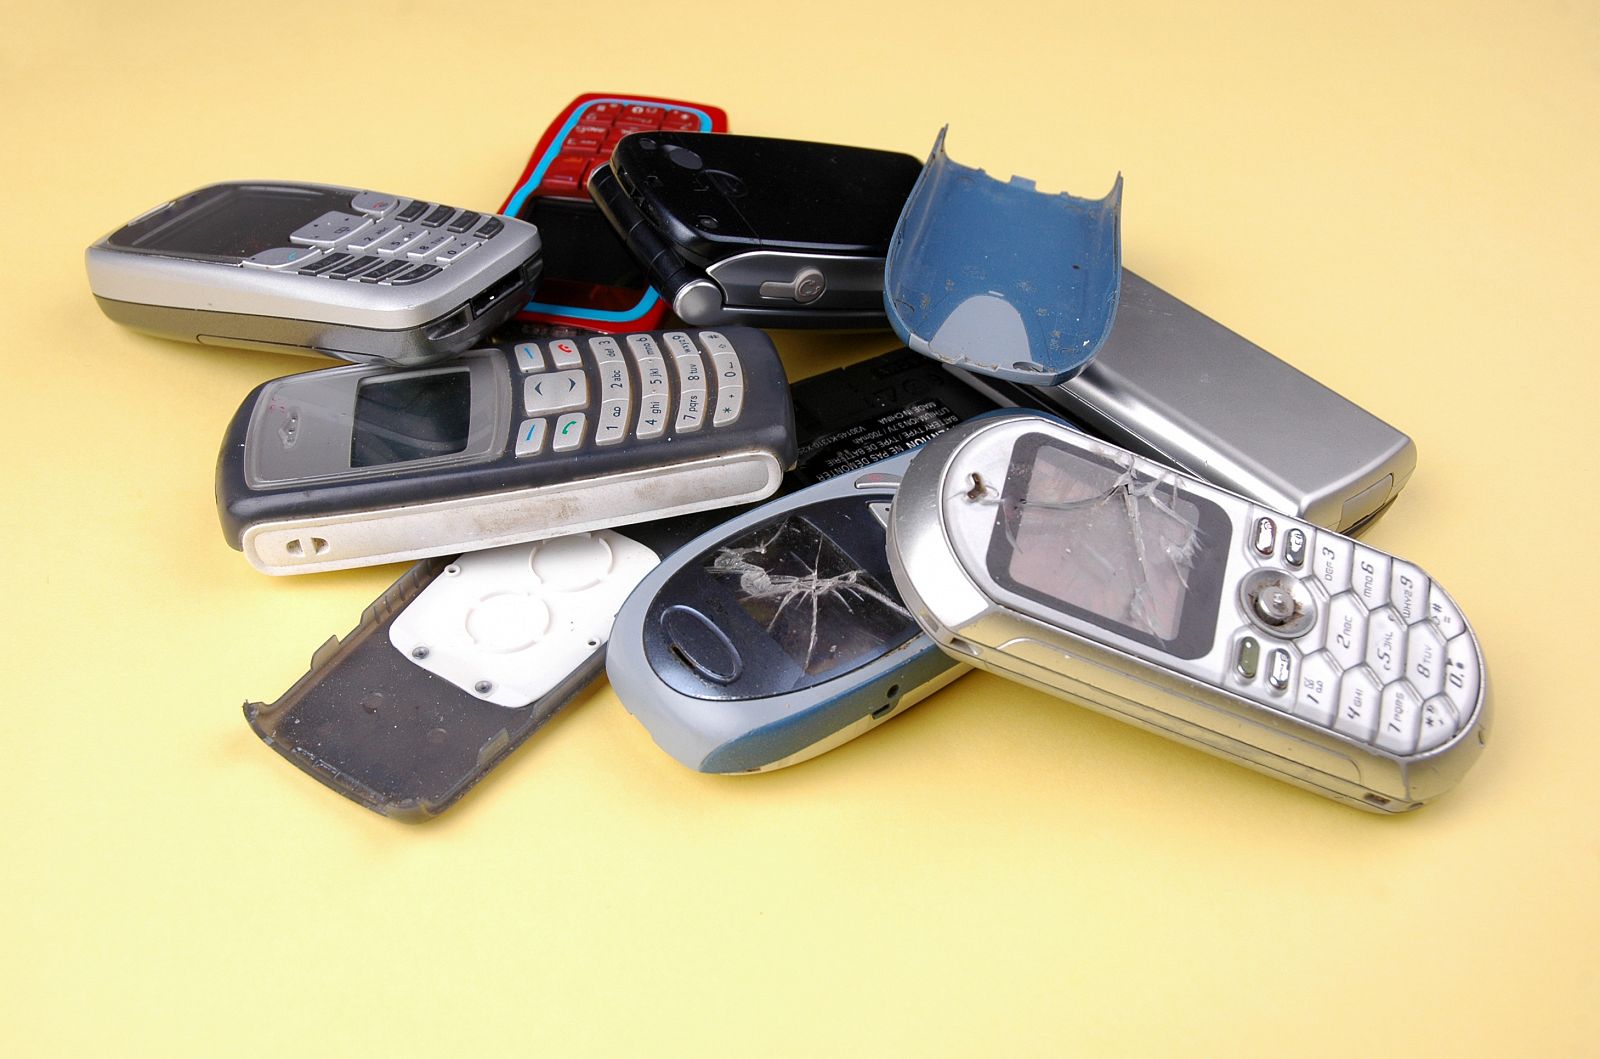 Los móviles desechados suelen acabar en un cajón o en la basura, casi nunca se reciclan adecuadamente